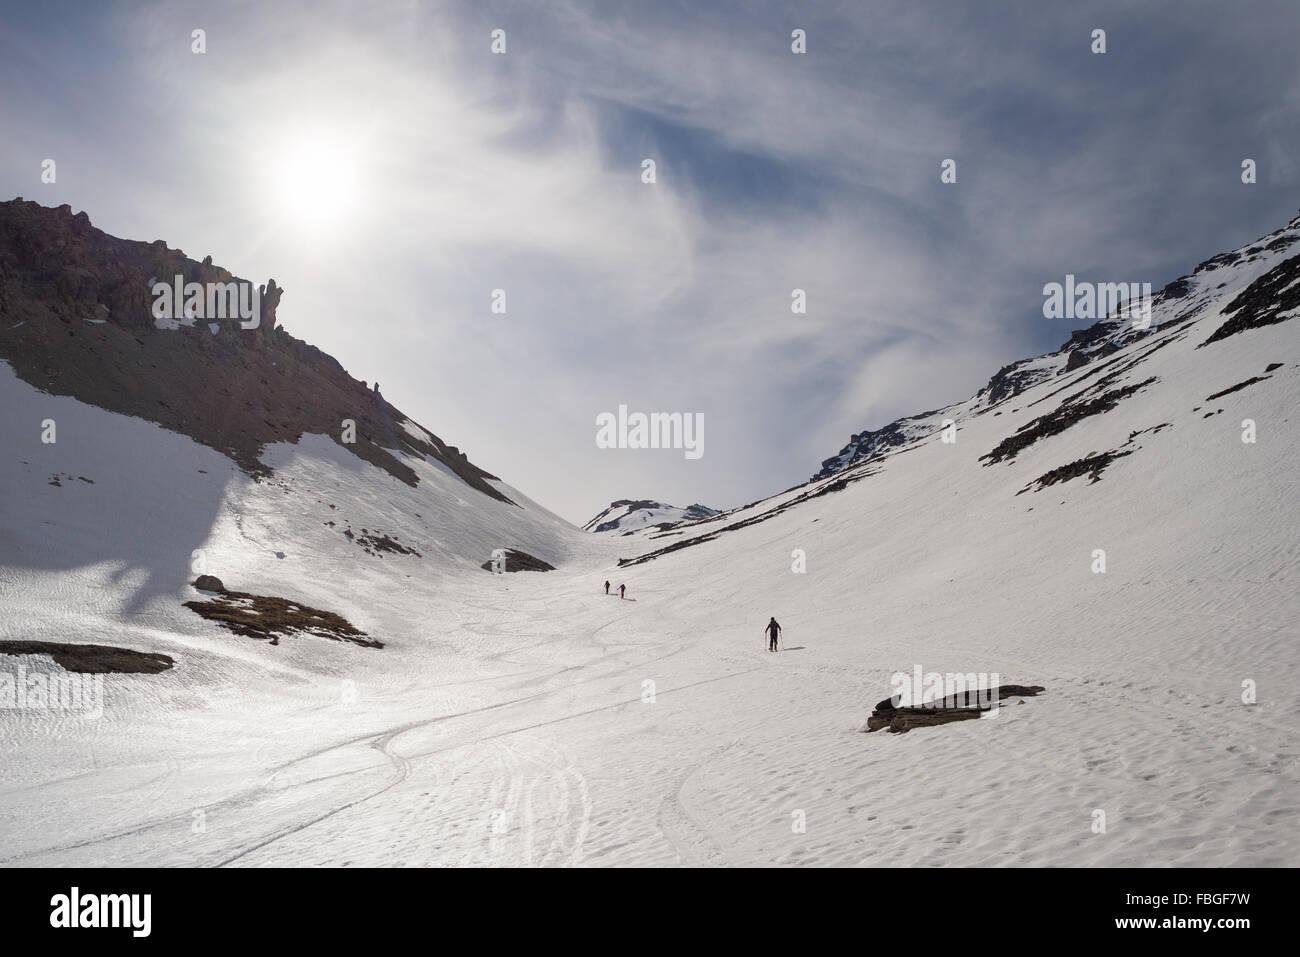 Gli alpinisti in salita per escursioni di sci alpinismo sul pendio nevoso verso il vertice della montagna. Concetto di conquista delle avversità e reachin Foto Stock